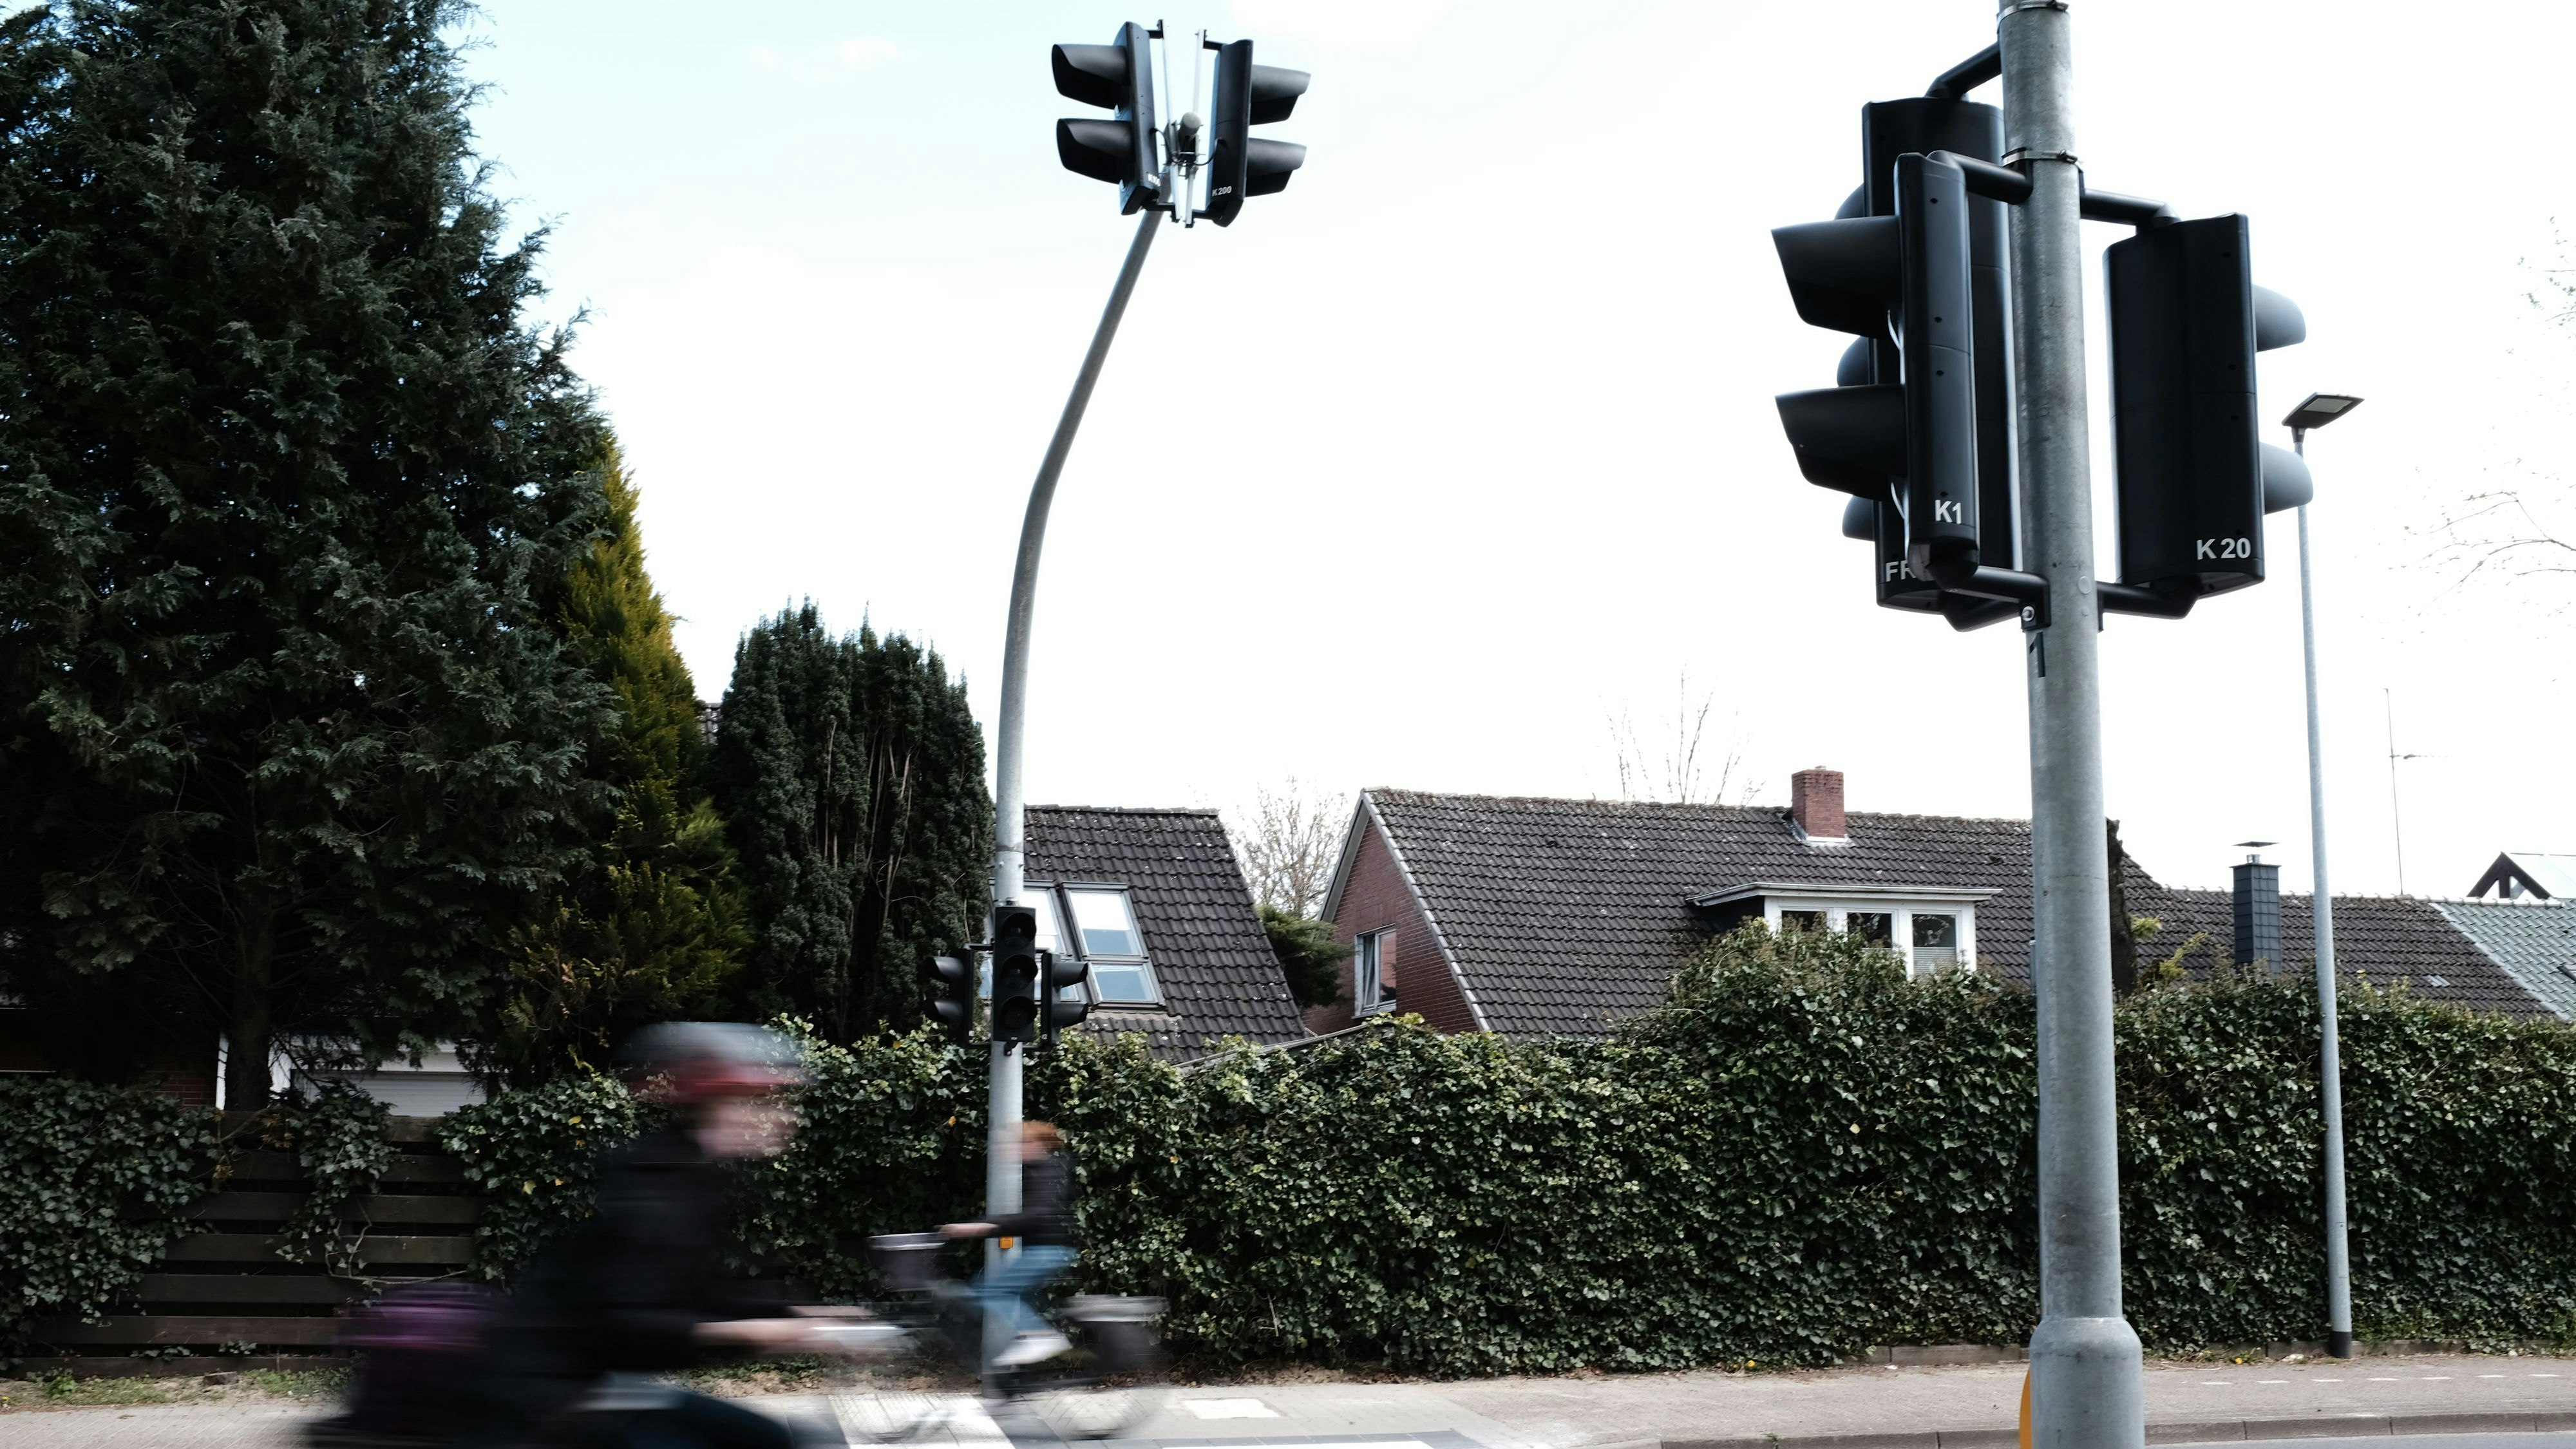 Radfahrer müssen rechts fahren: Die Ampel soll ihnen ermöglichen, die Straße sicher zu überqueren, um regelkonform den in Fahrtrichtung rechten Radweg zu nutzen.&nbsp; &nbsp;Foto: Niemeyer